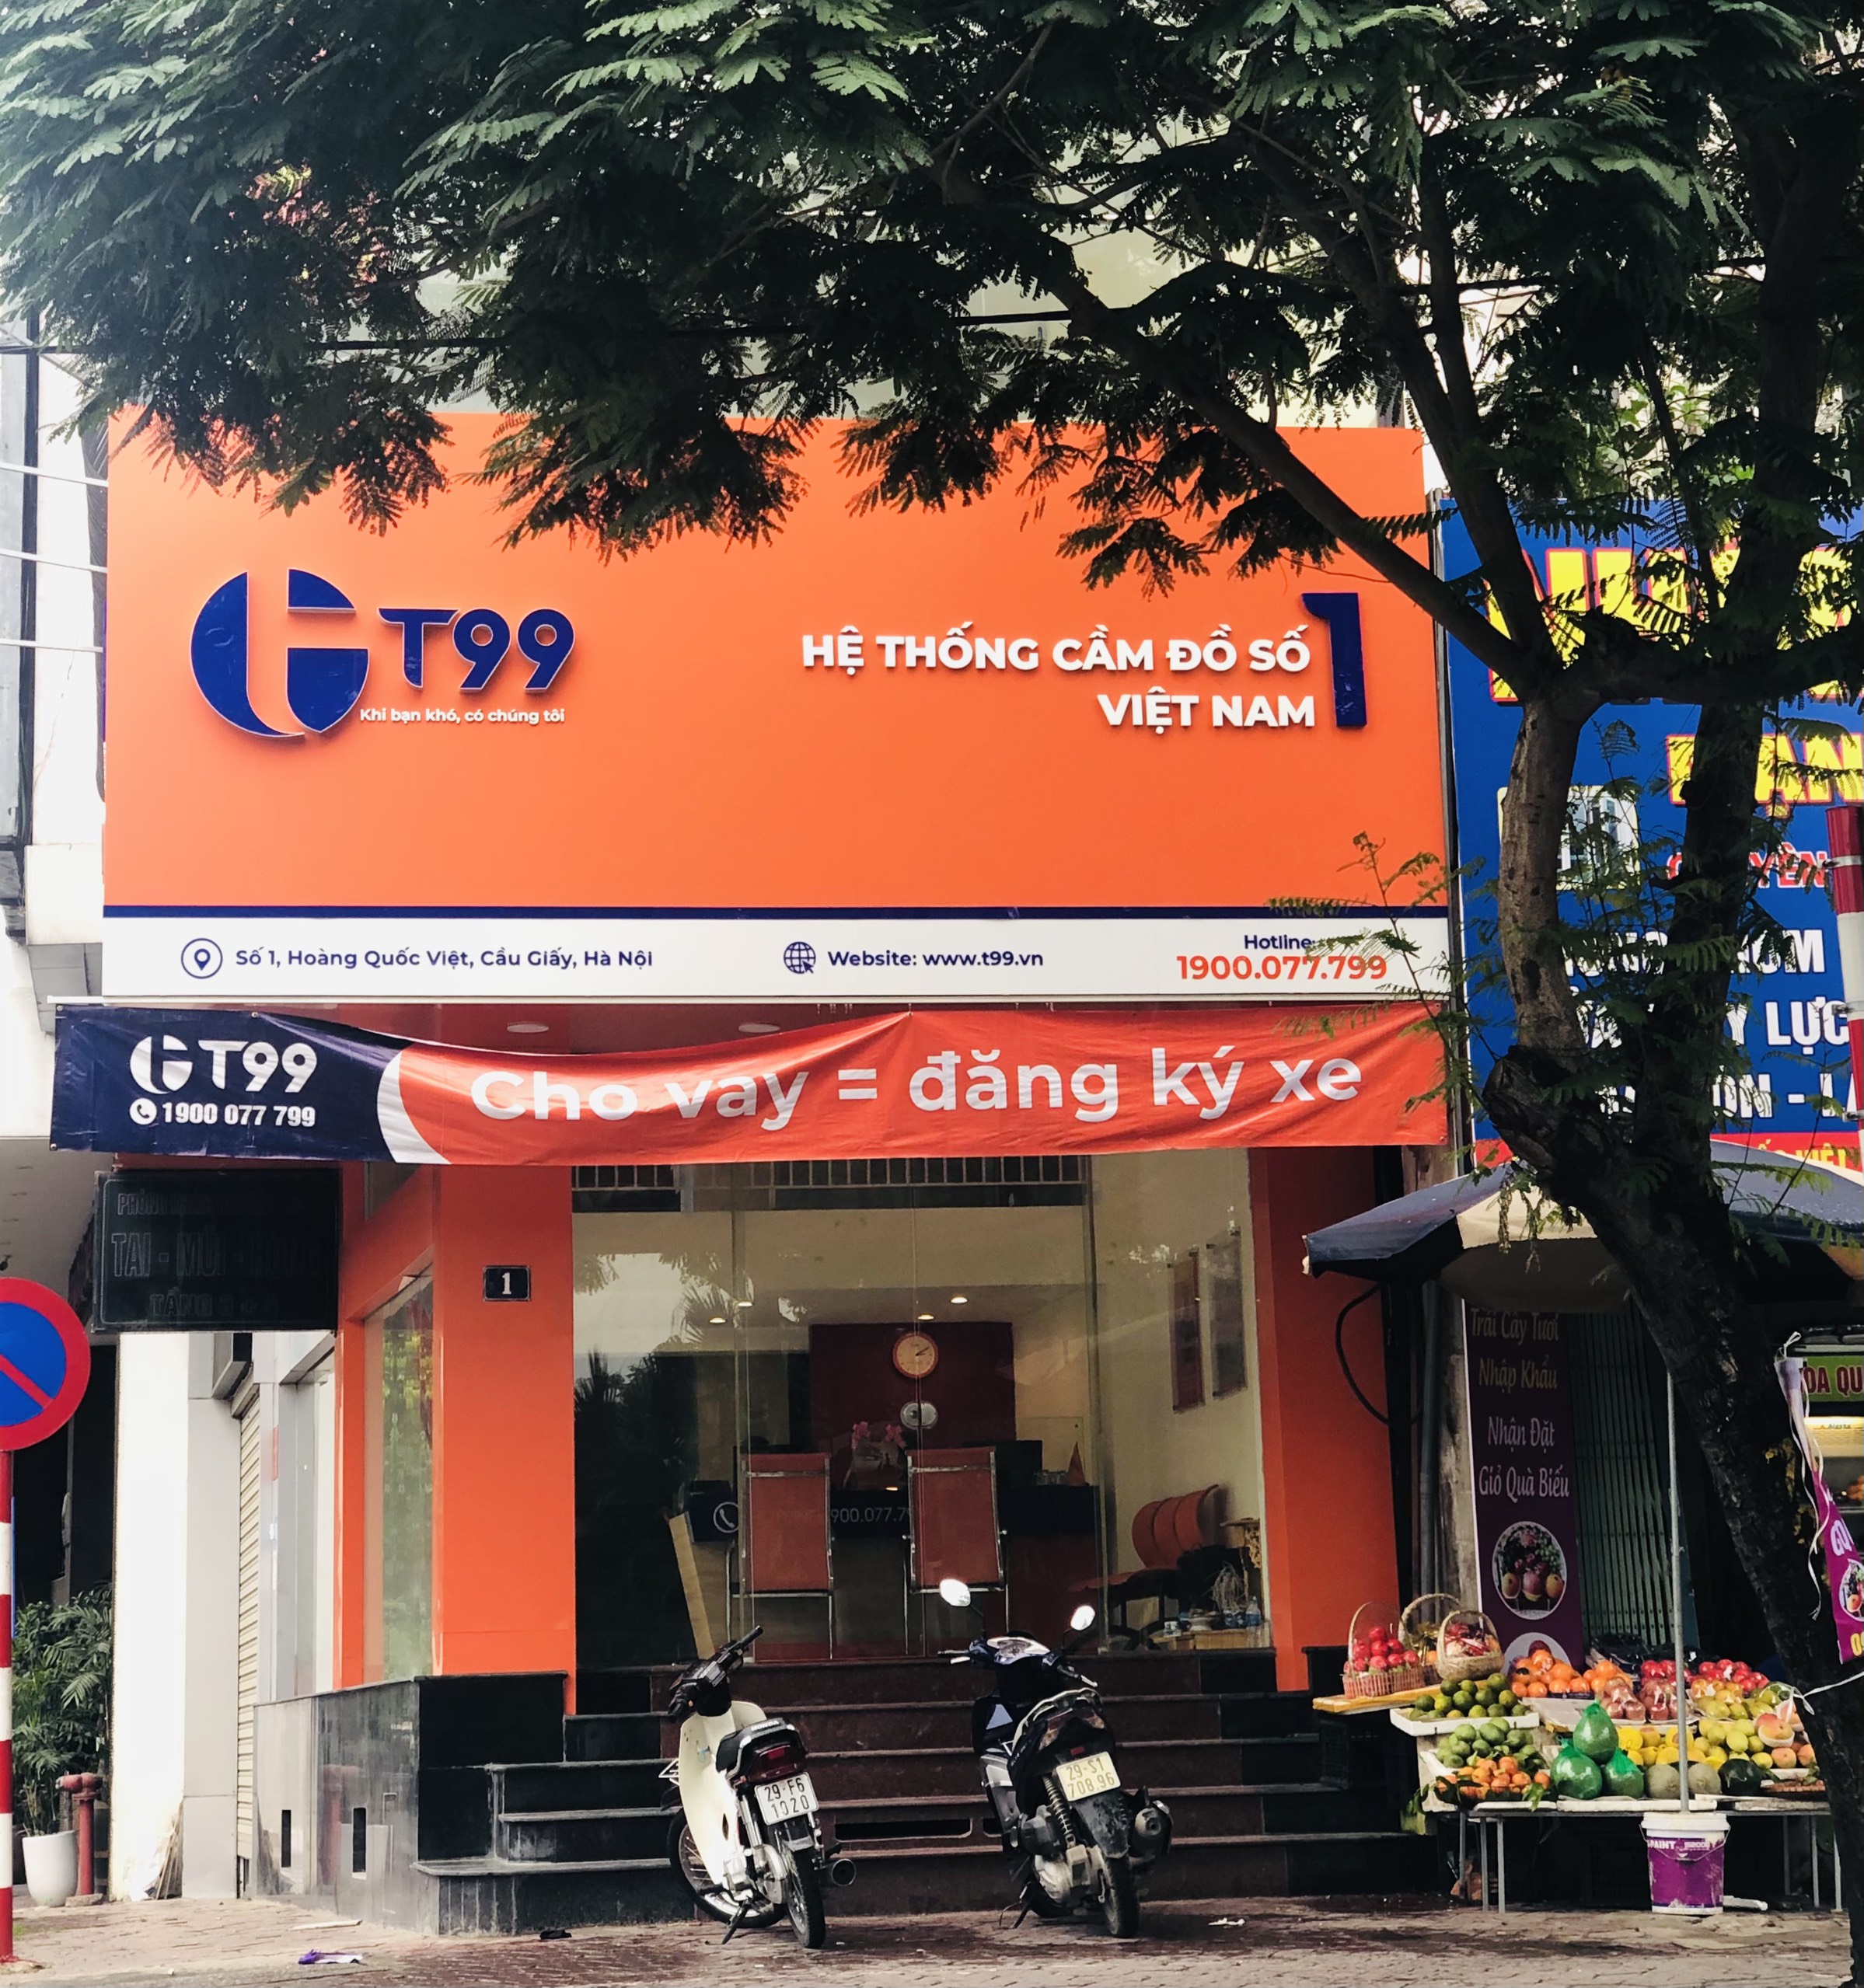 Hệ thống cầm đồ T99: Ngang nhiên quảng cáo dịch vụ số 1 Việt Nam?